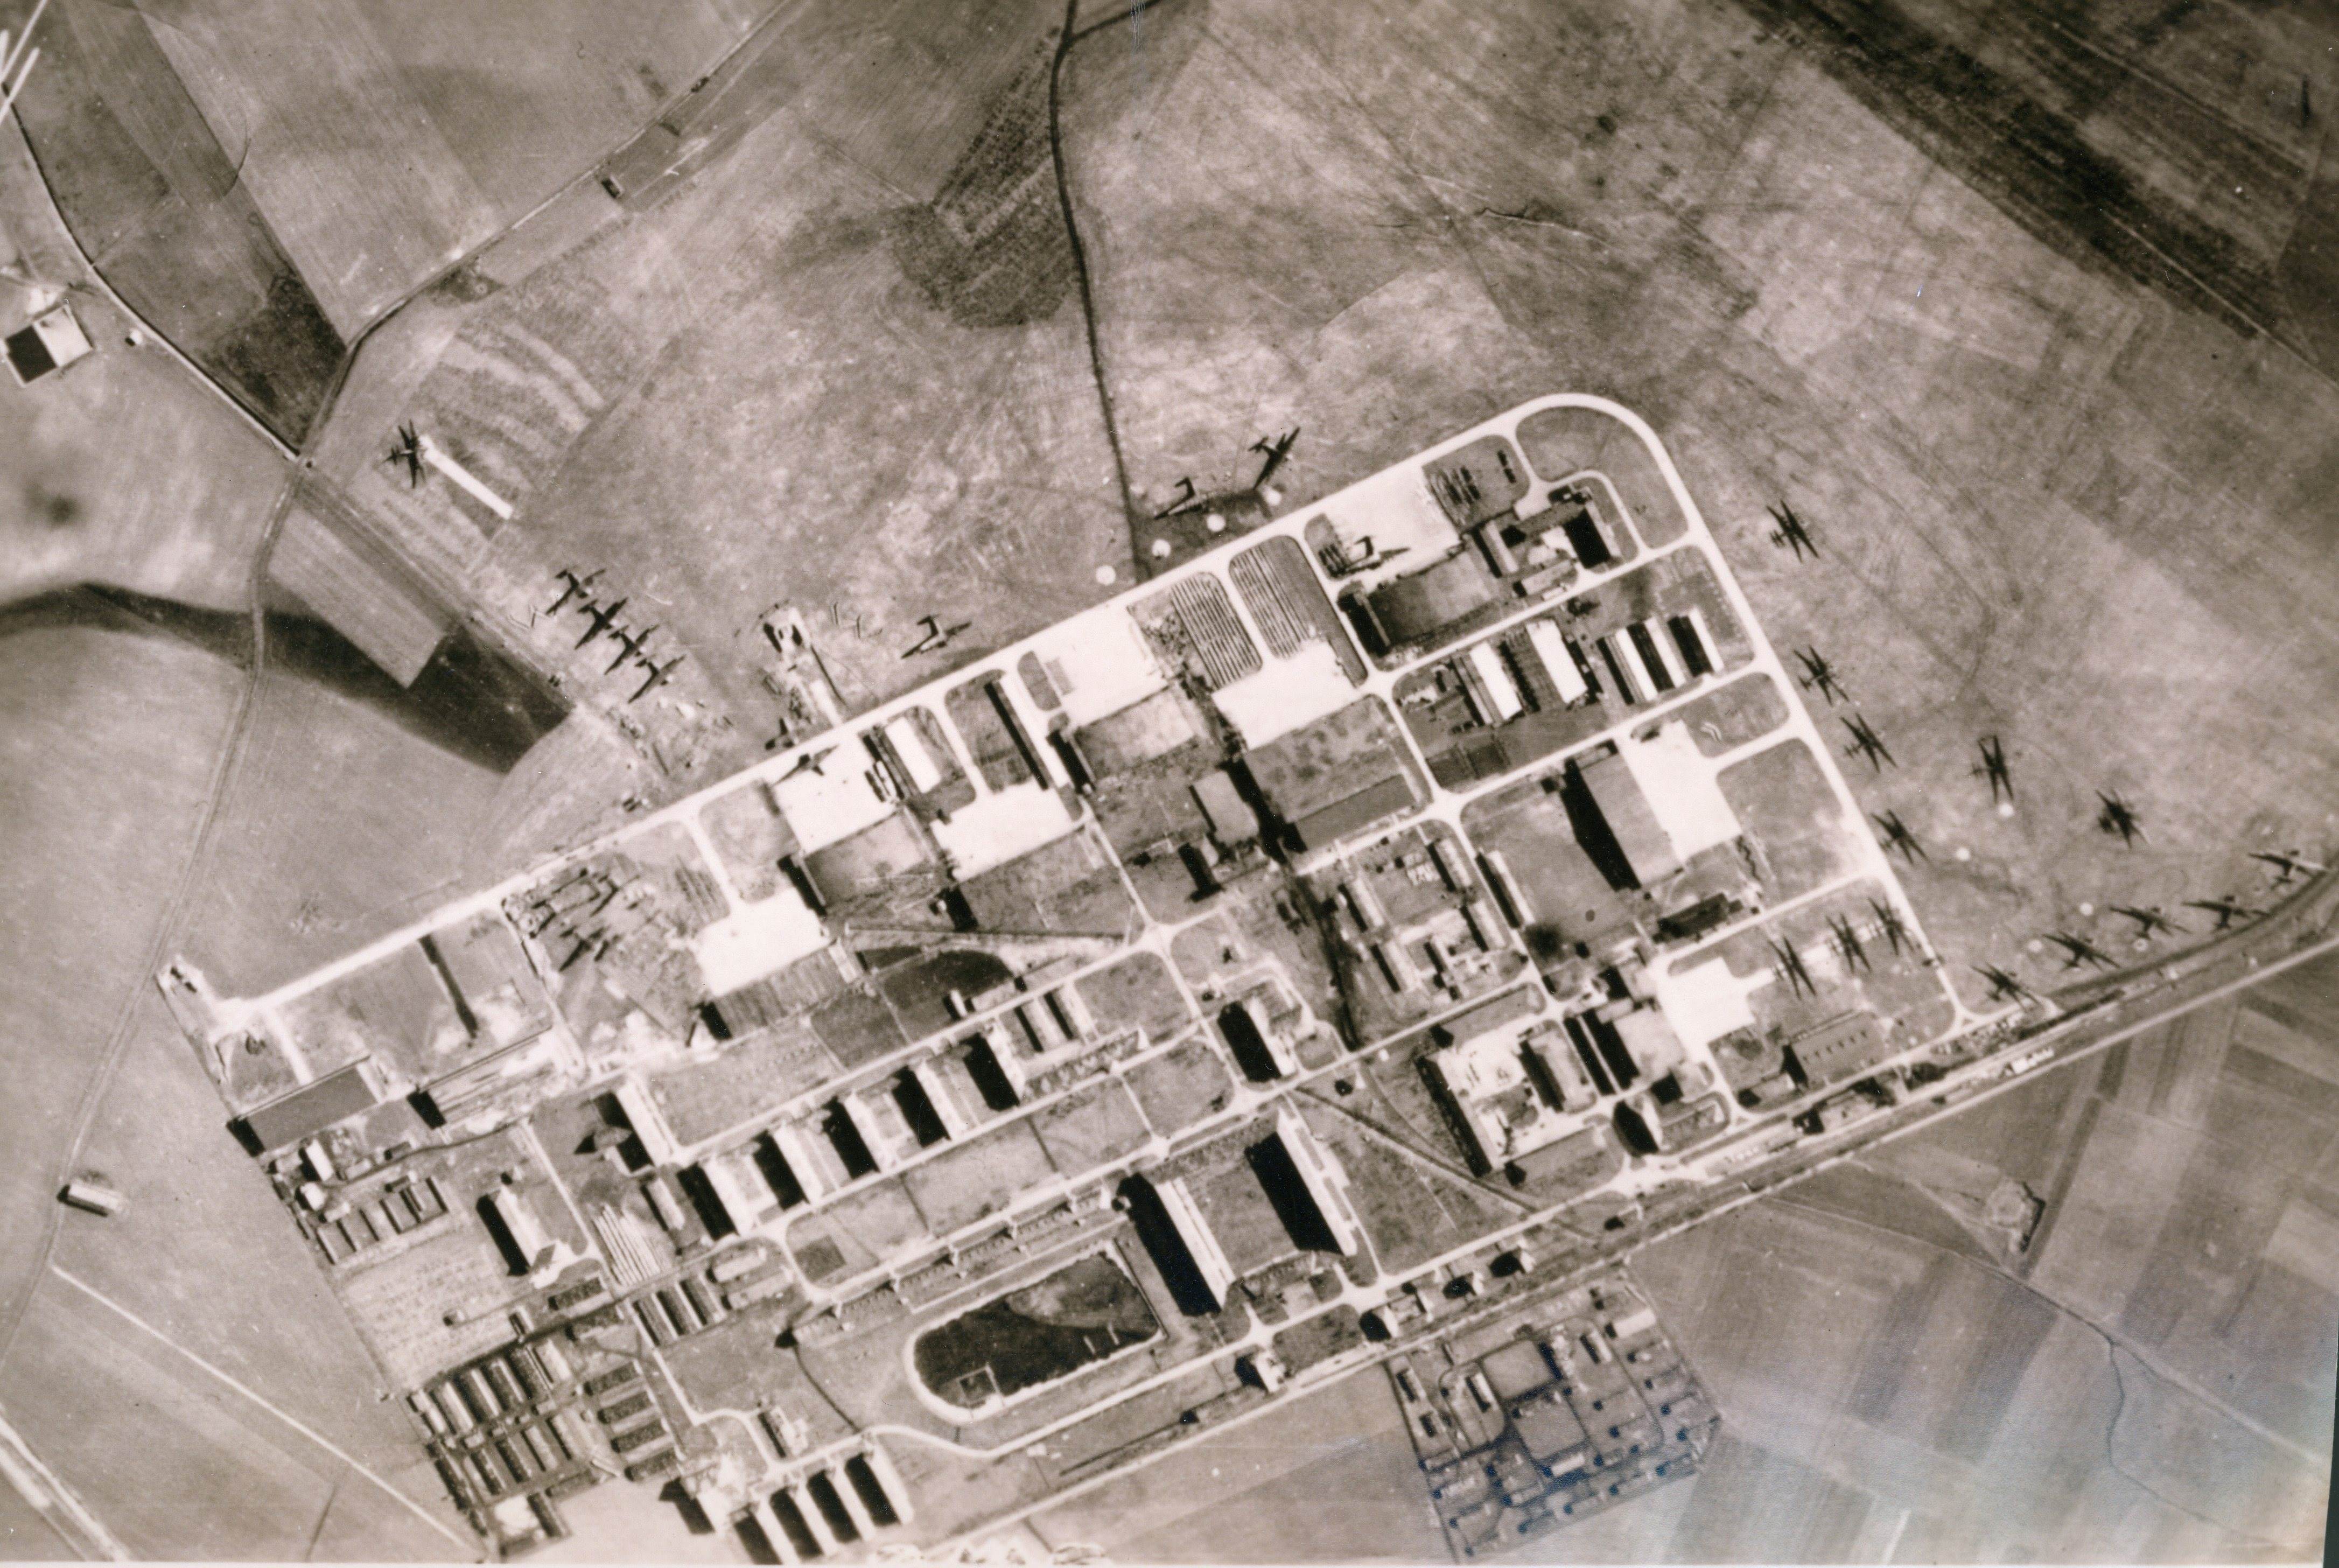 Fliegerhorst 1942 kleiner